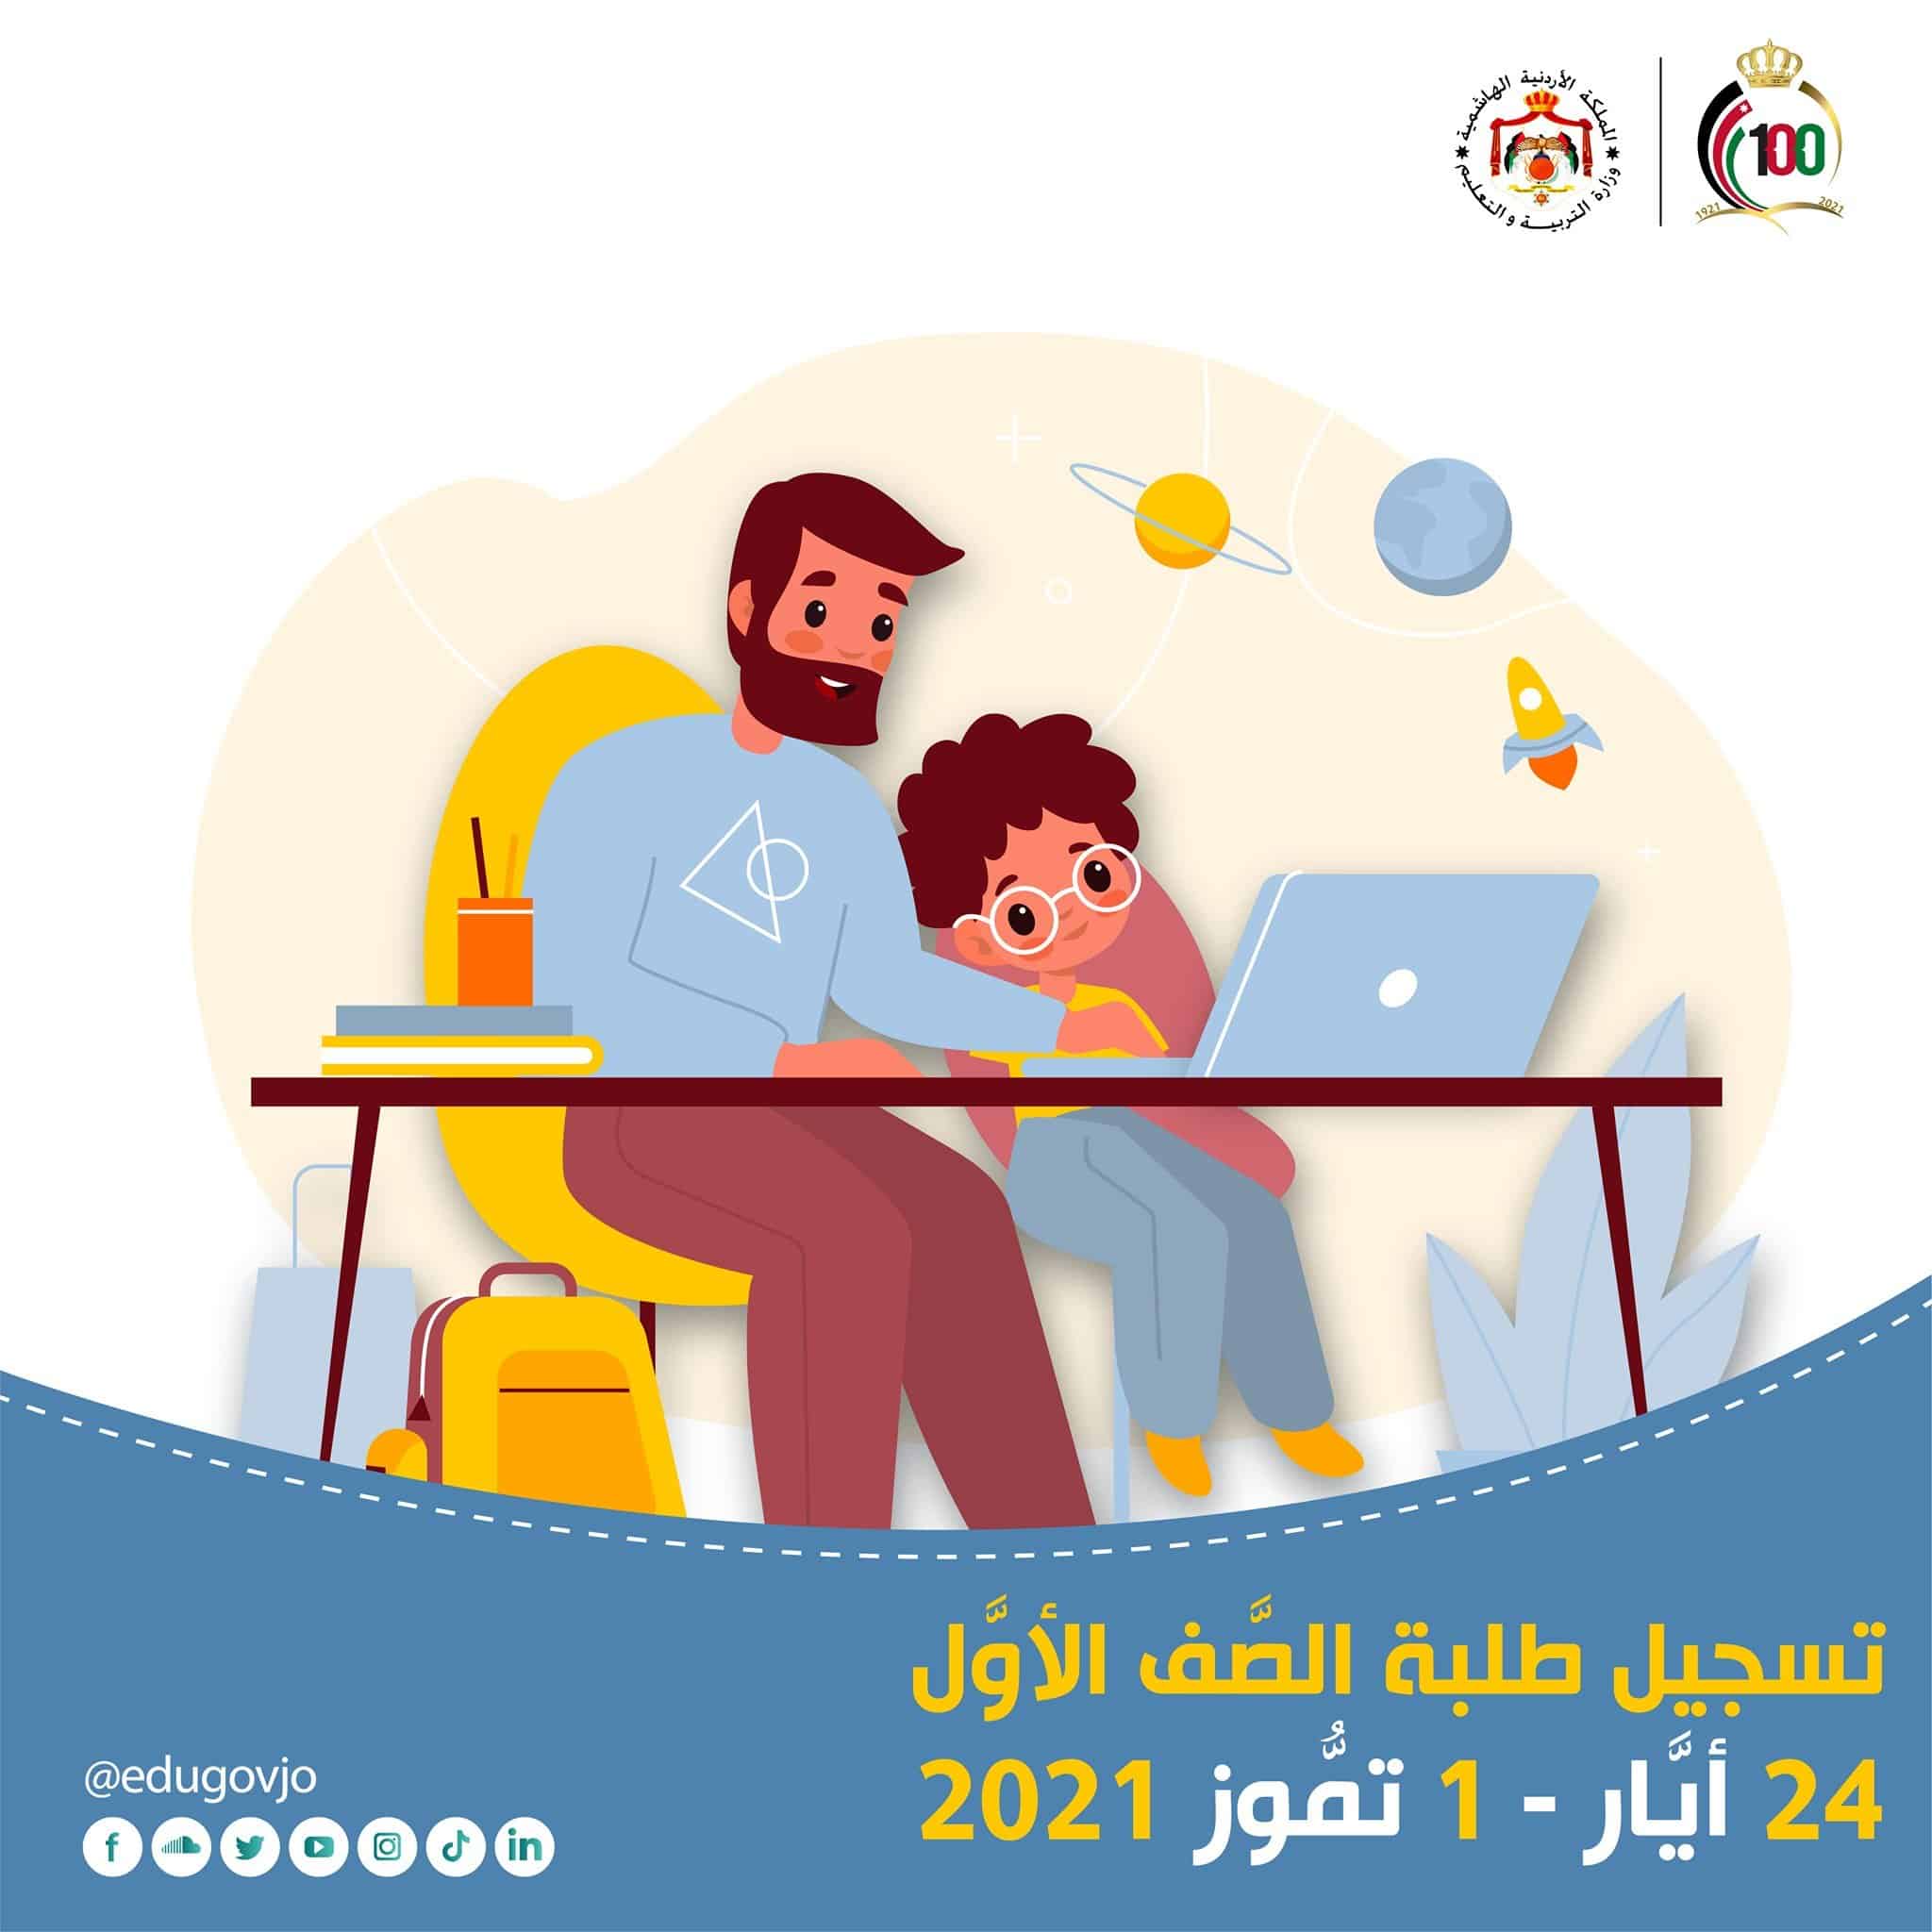 دخول eservices.moe.gov.jo رابط تسجيل الأول الابتدائي بالأردن 2021 بالرقم المدني